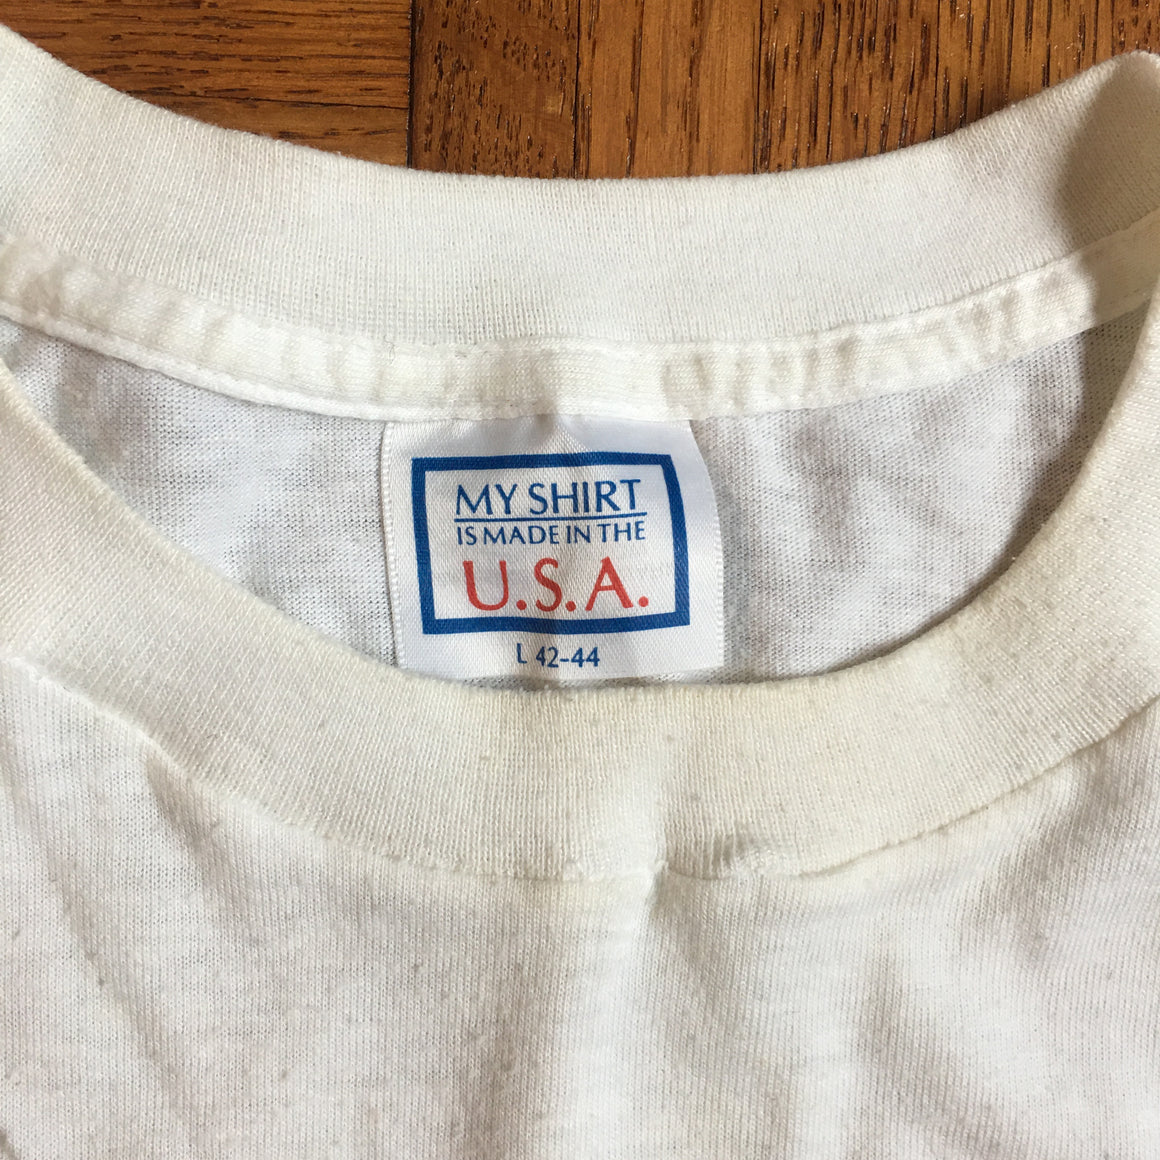 Penn State 1987 Fiesta Bowl shirt - M / L